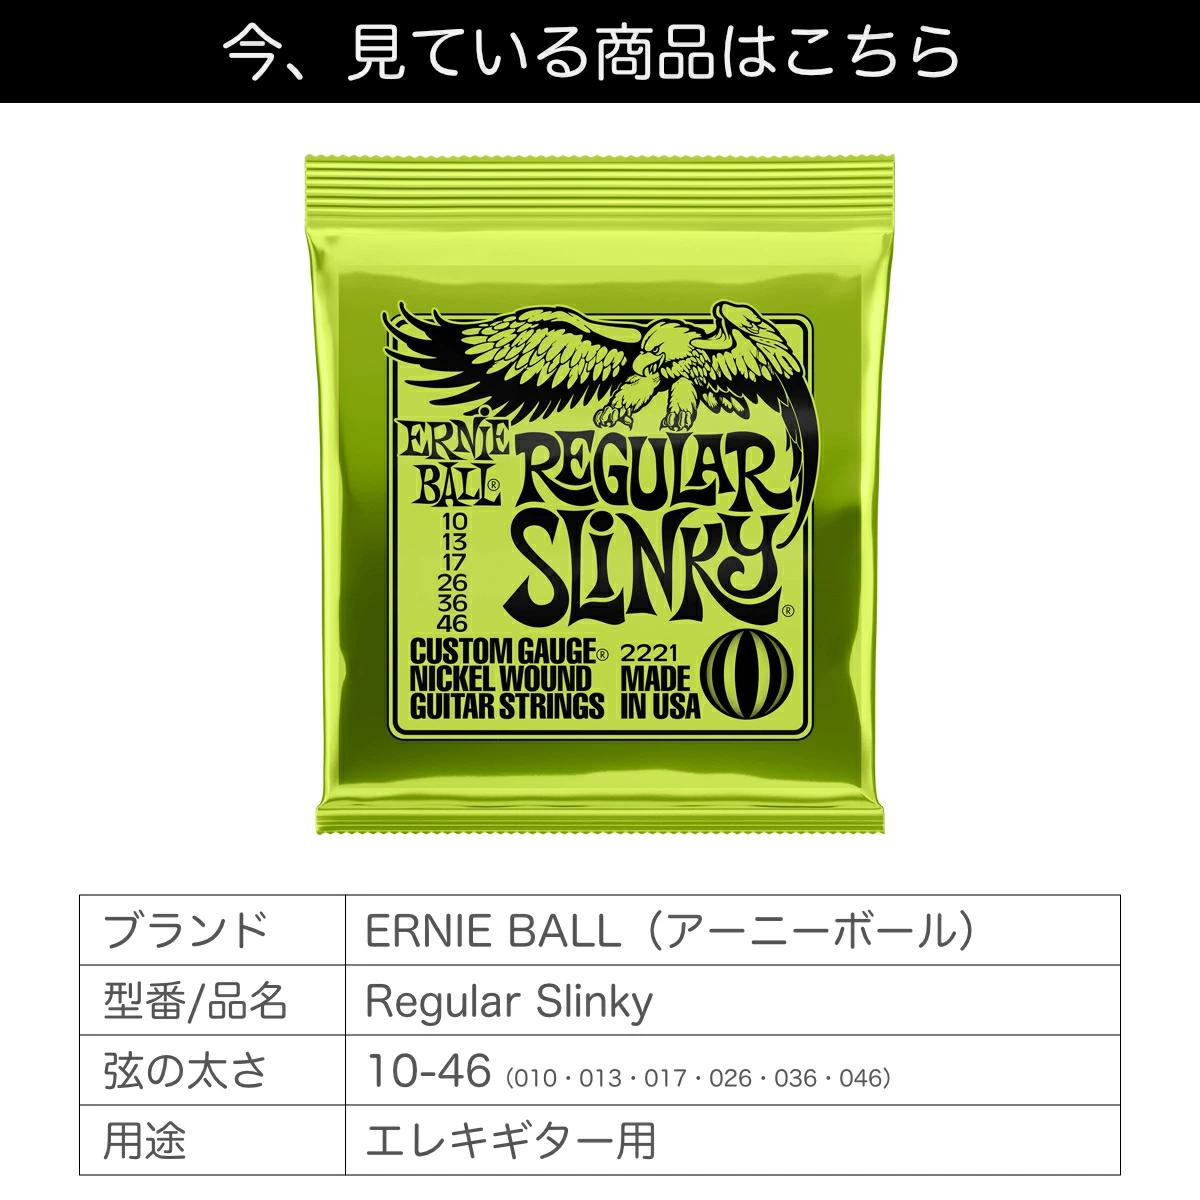 アーニーボール ERNIE BALL 10-46 Regular Slinky (2221) エレキギター